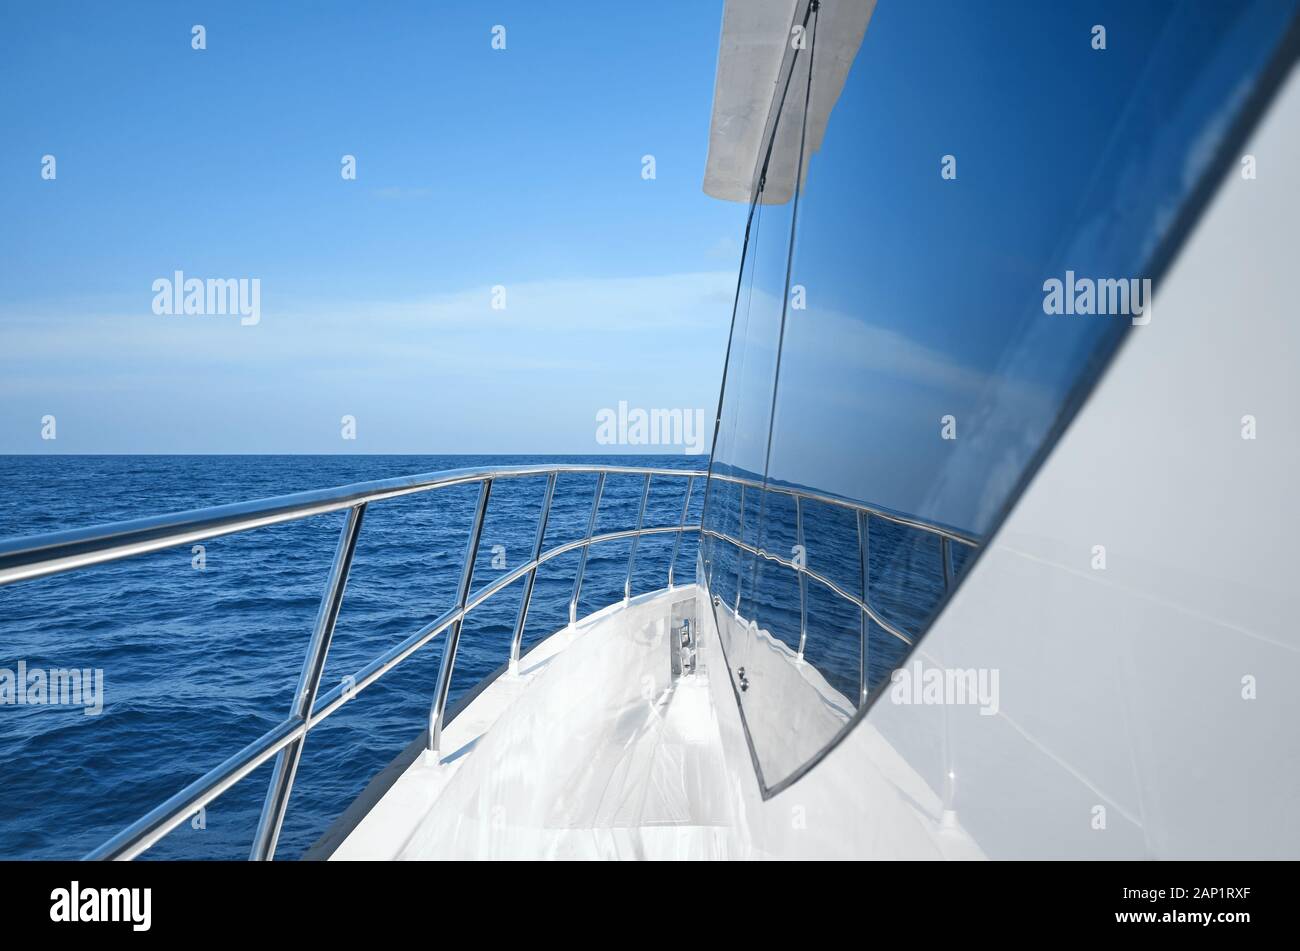 Modernen boot Seite und Geländer an einem sonnigen Tag, Luxury Travel Concept. Stockfoto